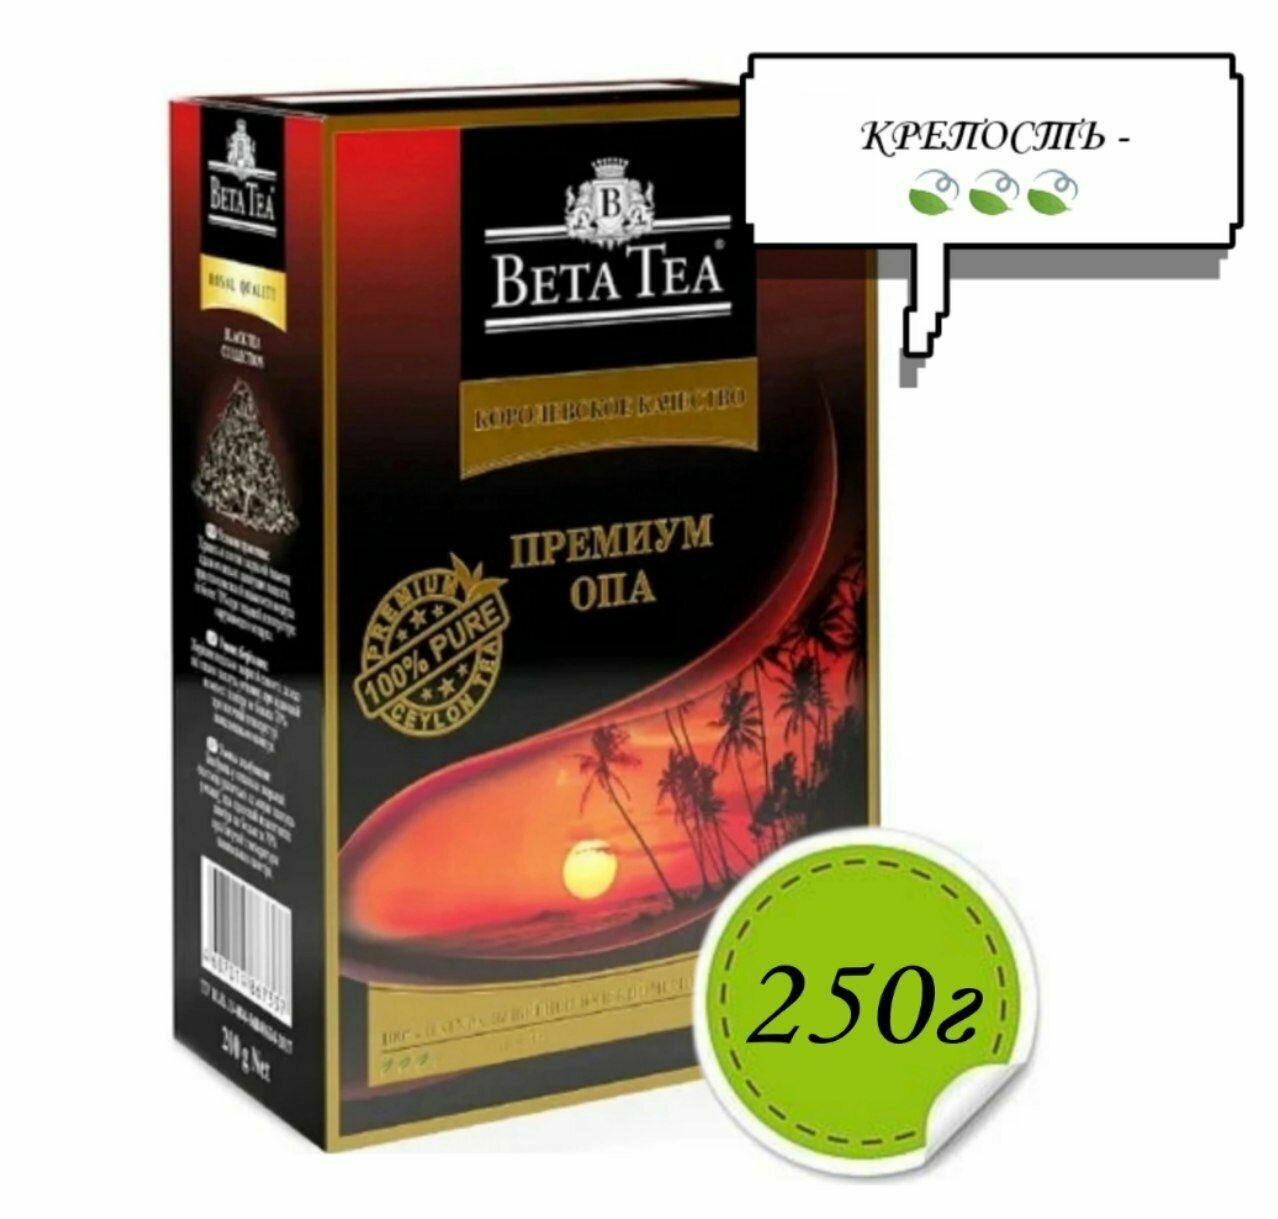 Черный чай BETA TEA Премиум ОПА 250г*3шт